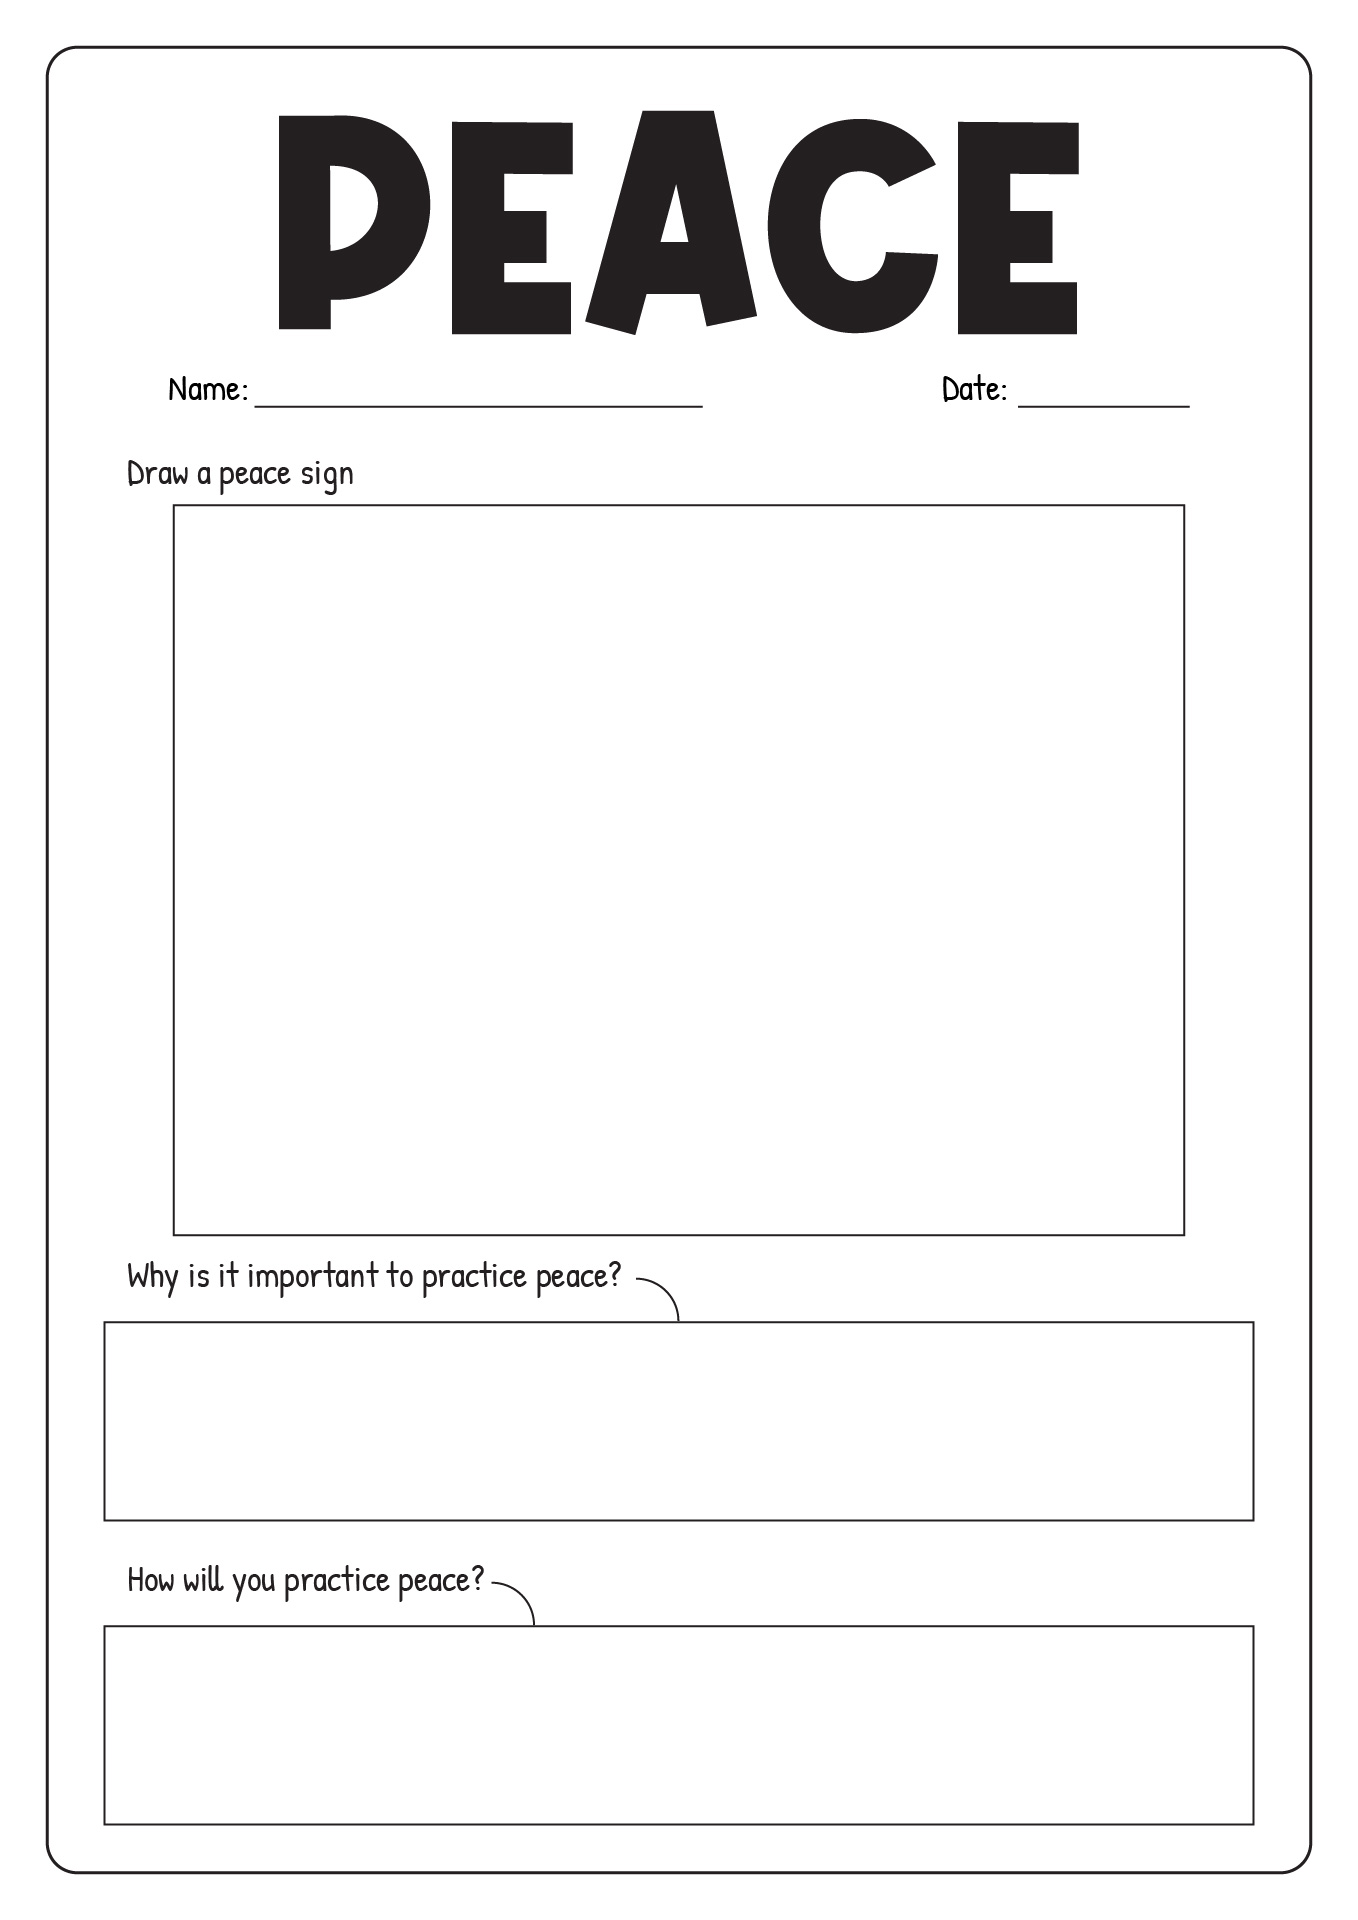 Worksheet On Peace in School